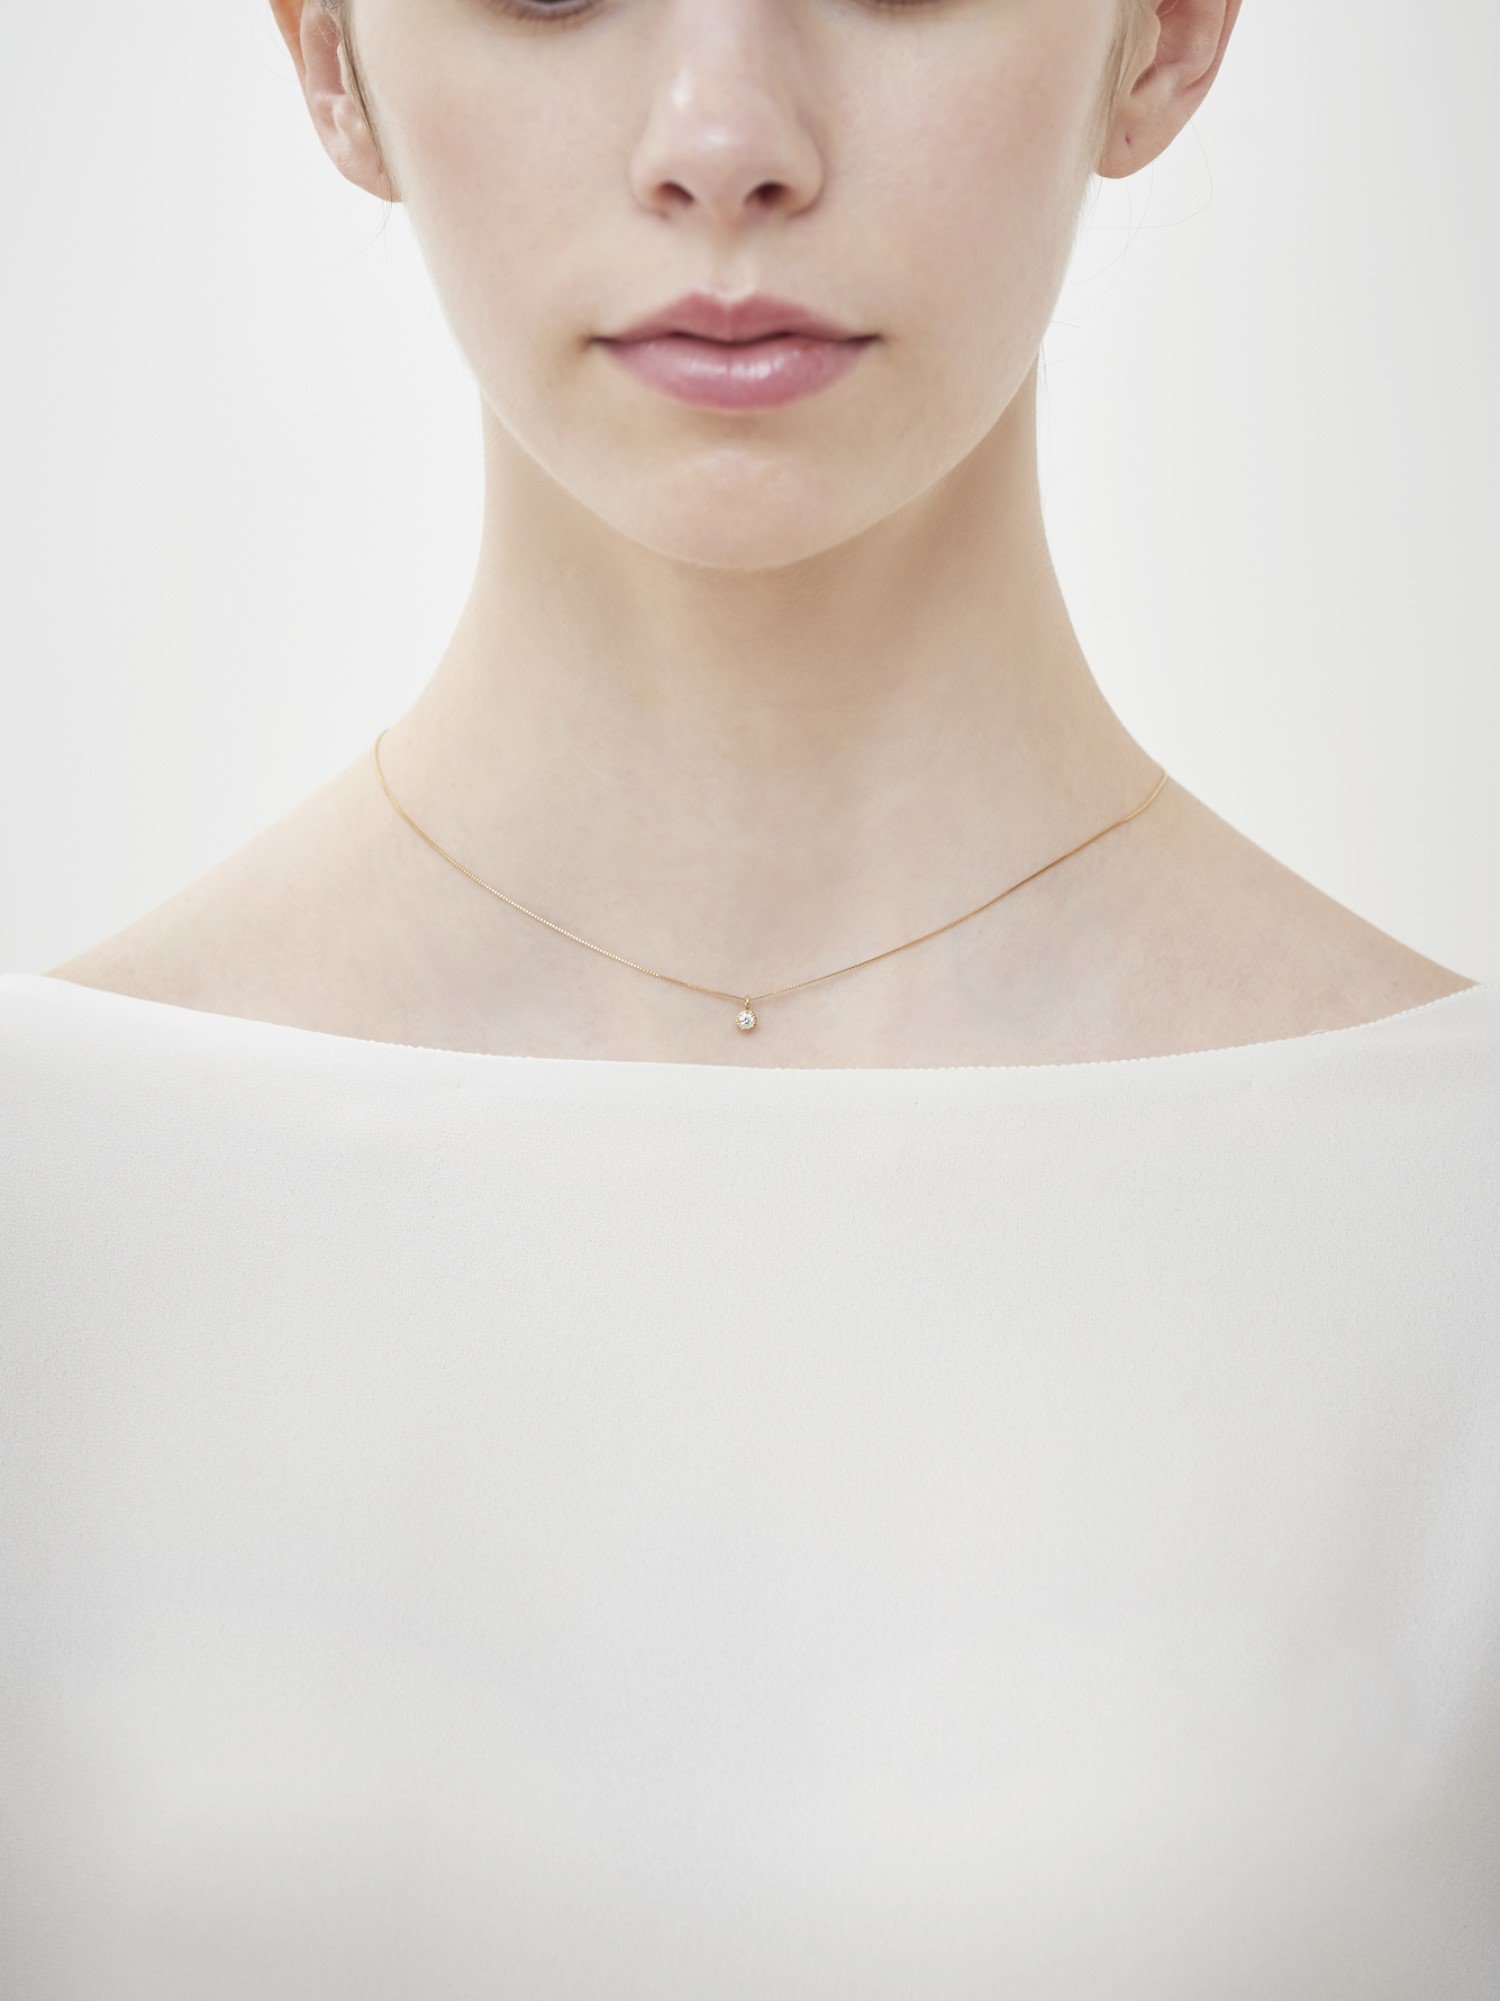 HISPANIA / Dew necklace - GIGI Jewelry